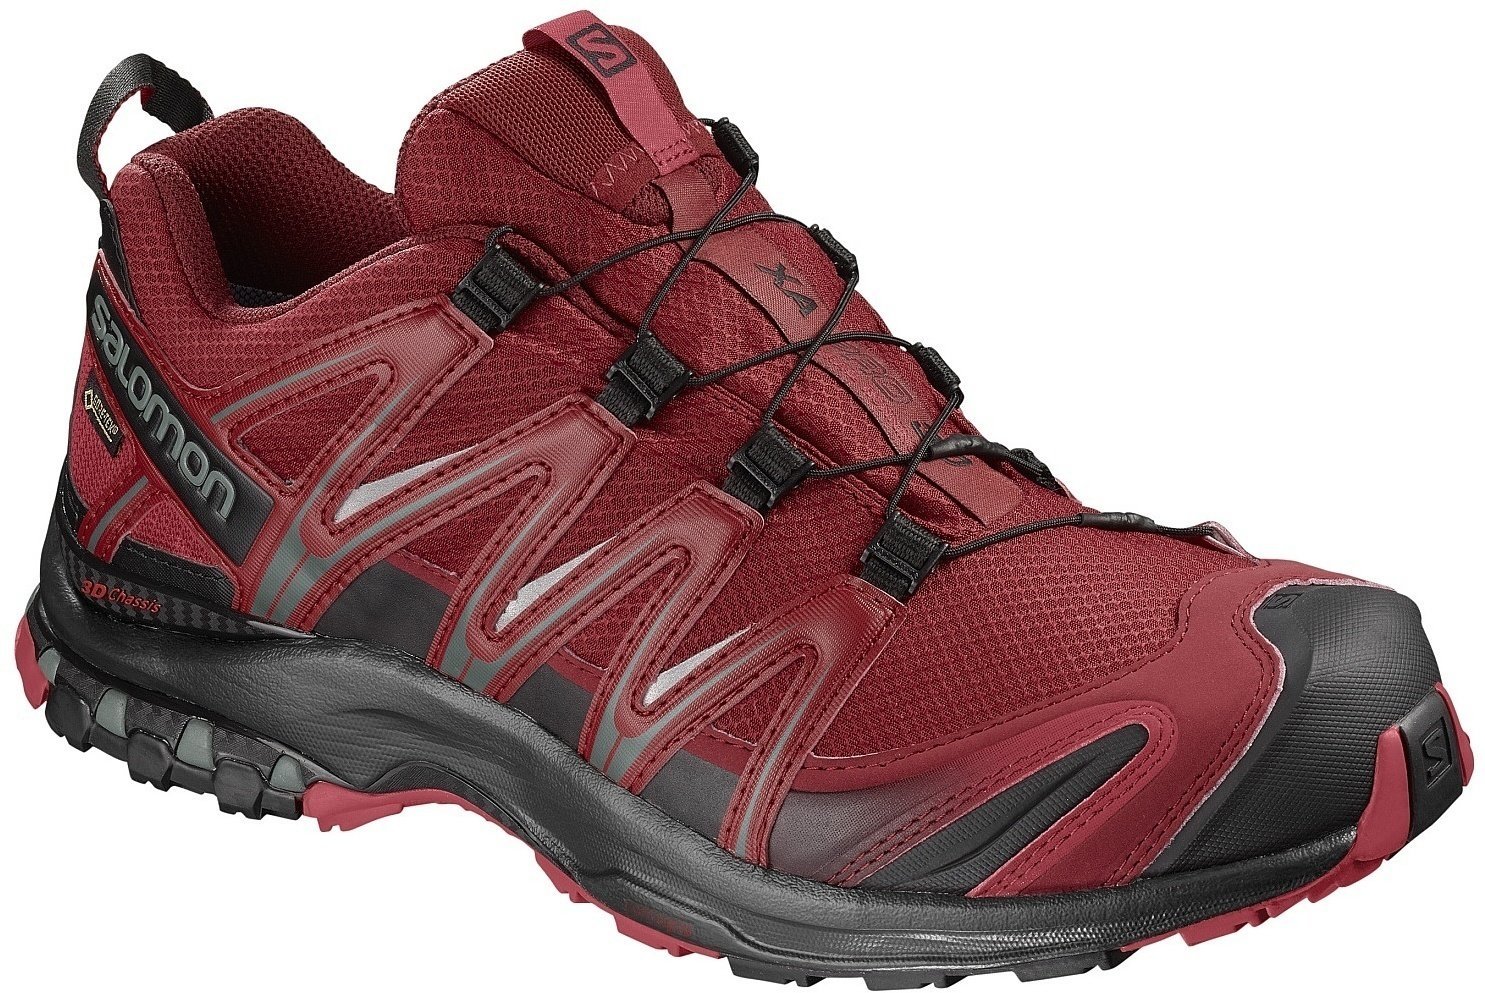 Mens Outdoor Shoes Salomon XA Pro 3D GTX Red Dahlia/Black/Barbados Cherry 43 1/3 Mens Outdoor Shoes